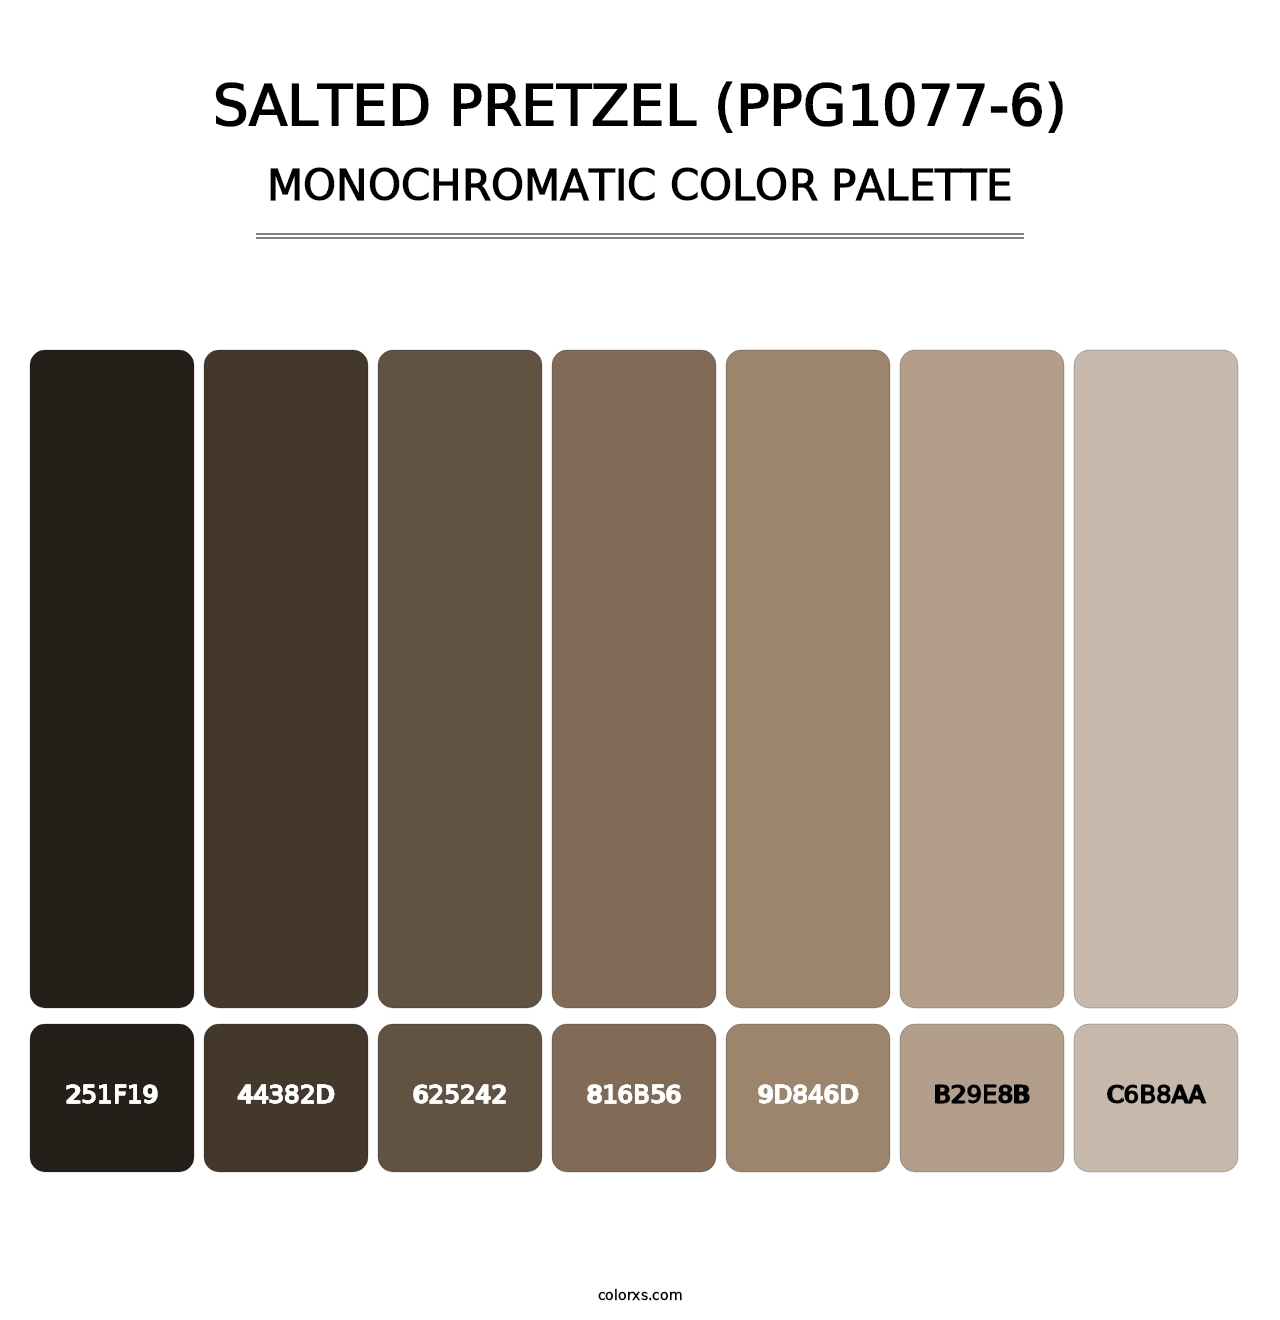 Salted Pretzel (PPG1077-6) - Monochromatic Color Palette